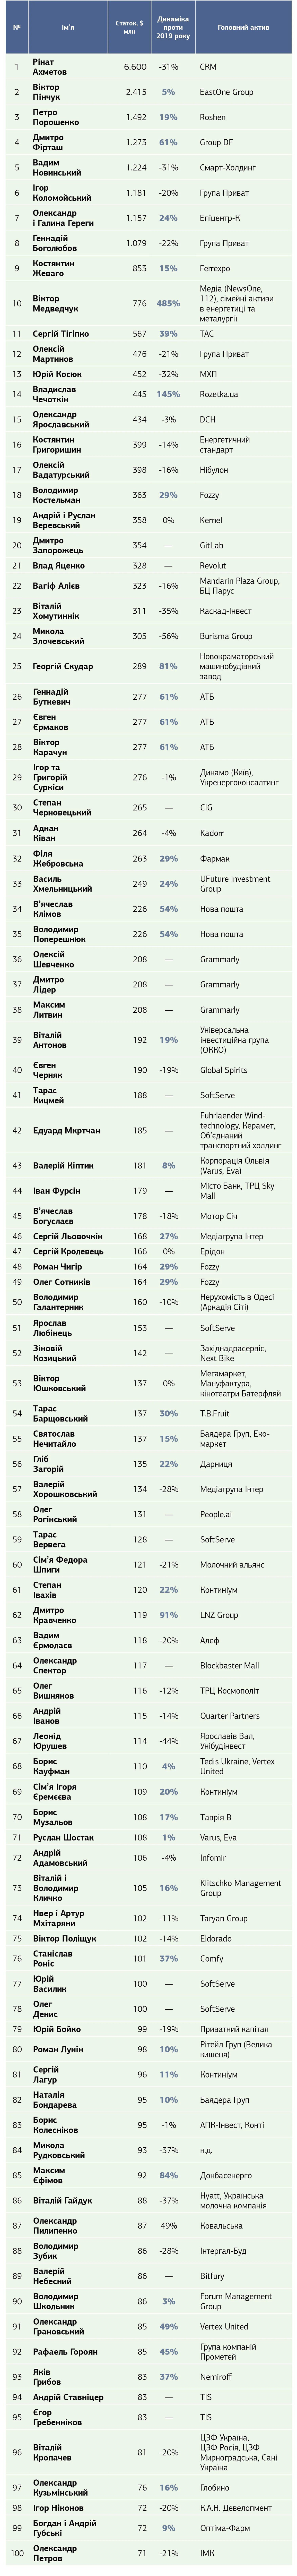 ТОП-100 найбагатших українців, рейтинг НВ